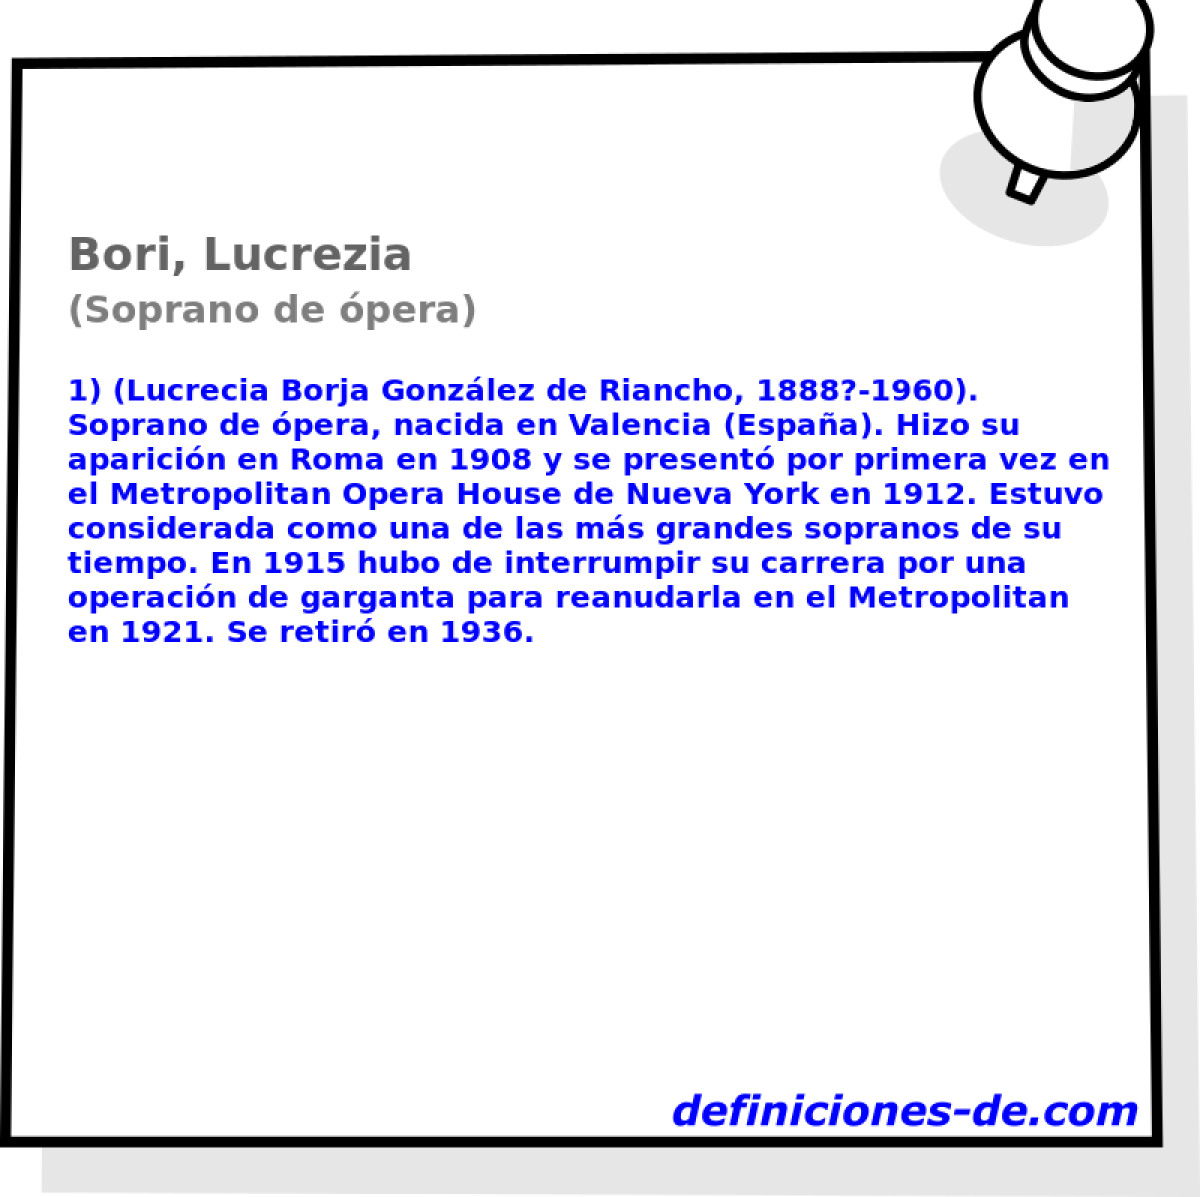 Bori, Lucrezia (Soprano de pera)